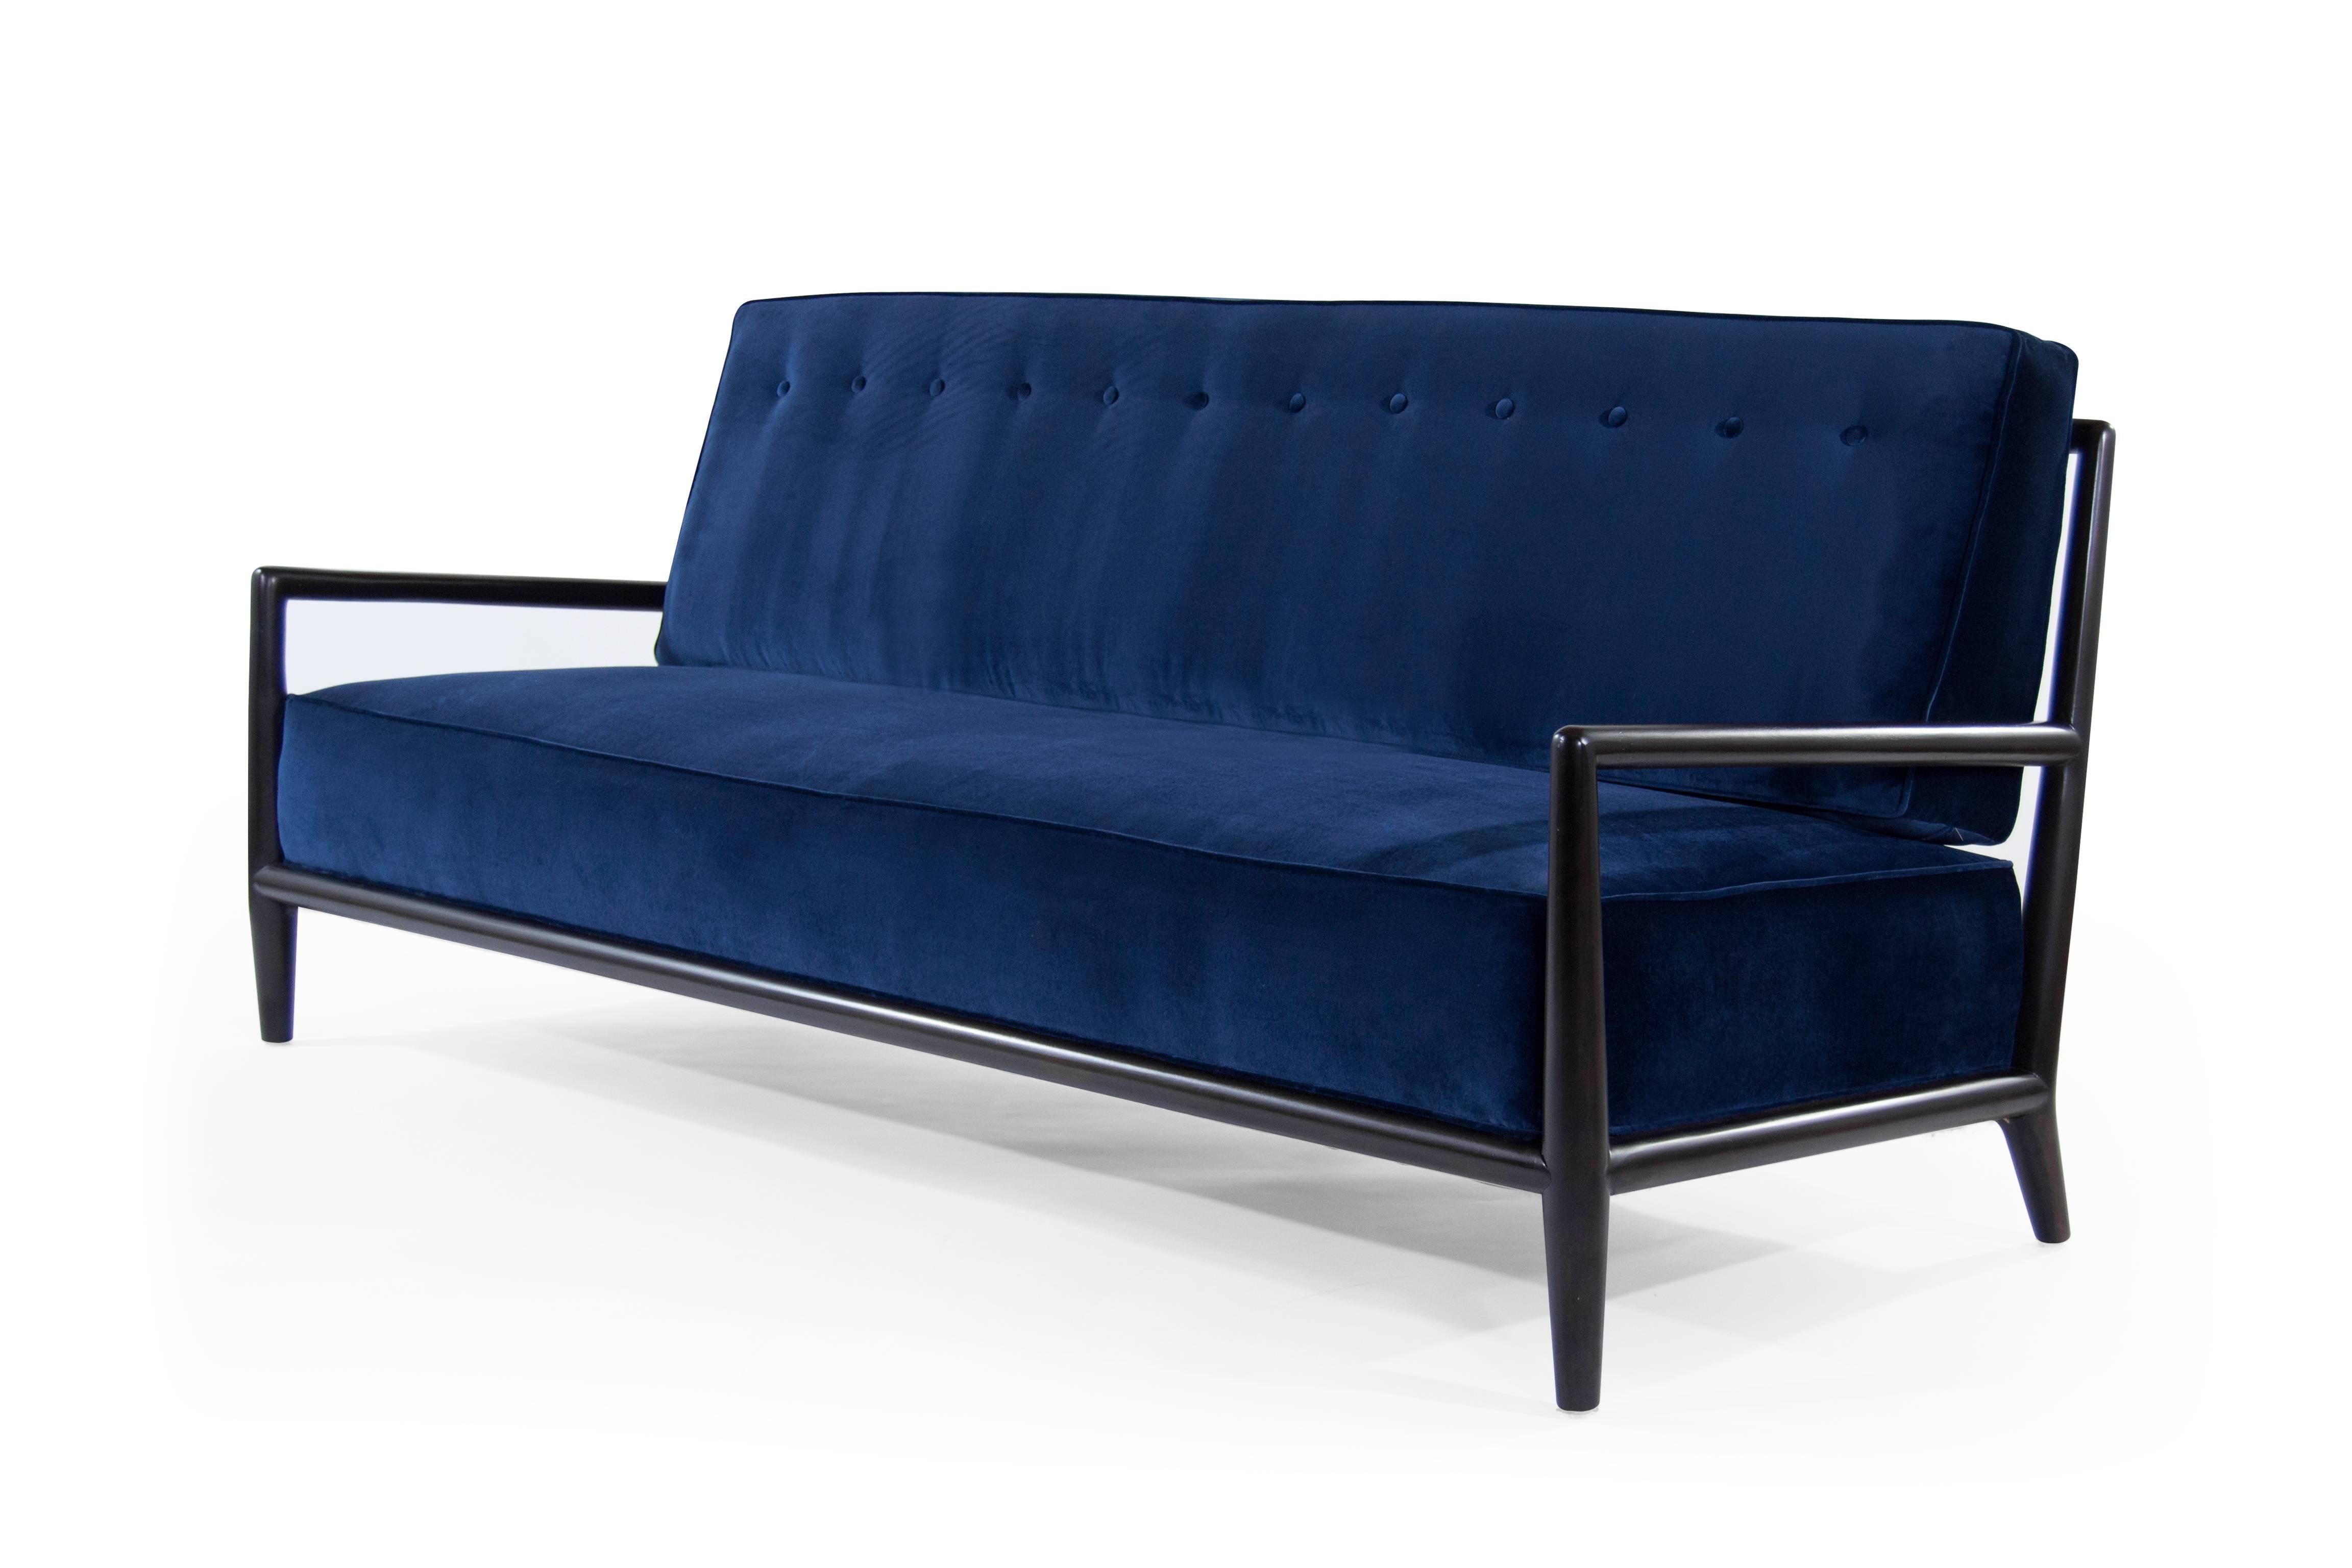 Stunning sofa by T.H. Robsjohn-Gibbings for Widdicomb, walnut frame newly refinished in espresso. Re-upholstered in navy blue velvet.